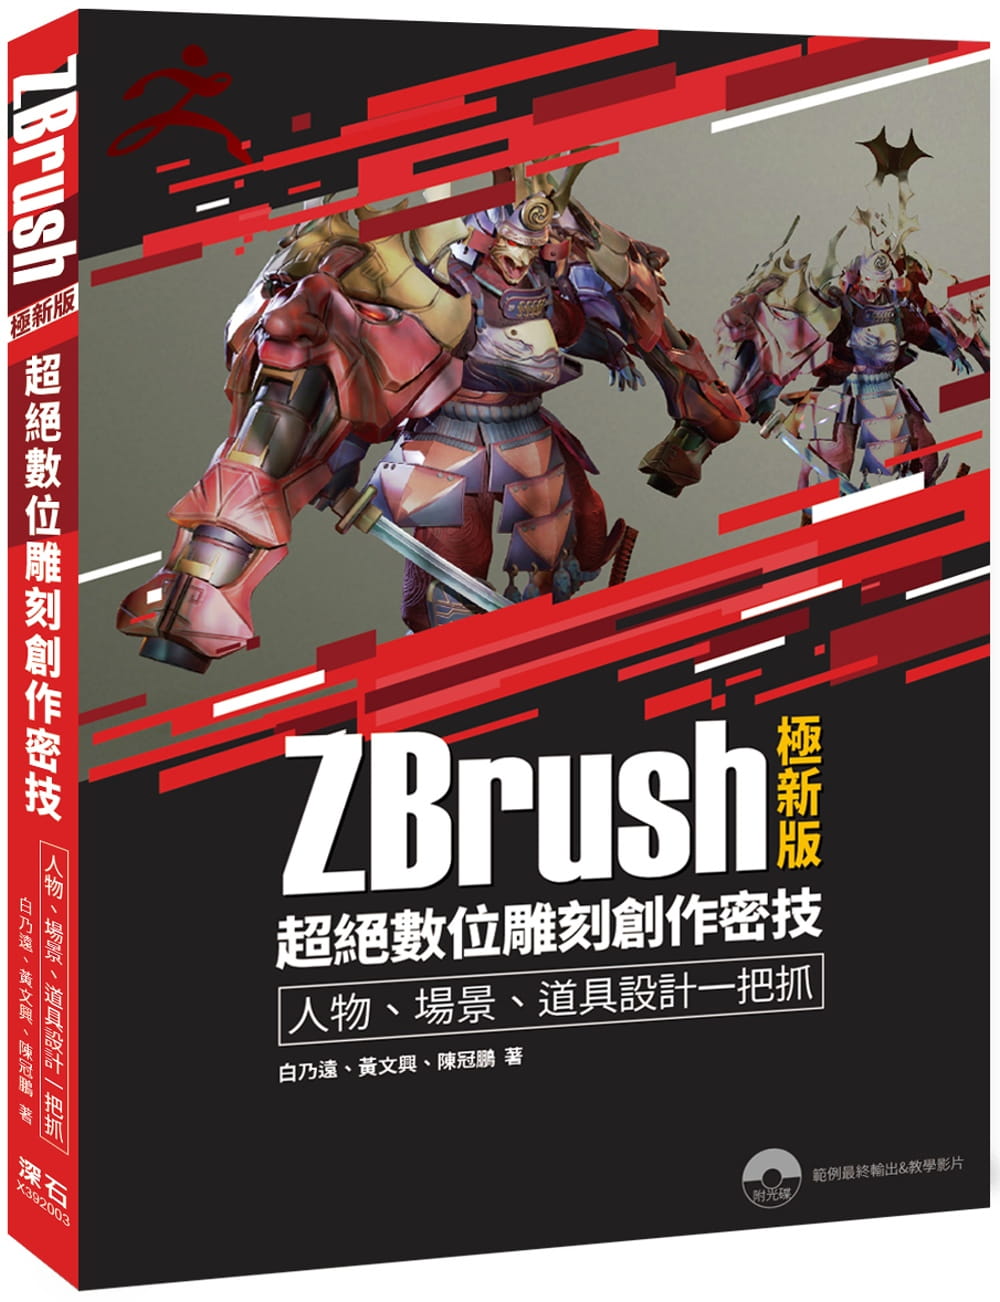 ZBrush極新版：超絕數位雕刻創作密技